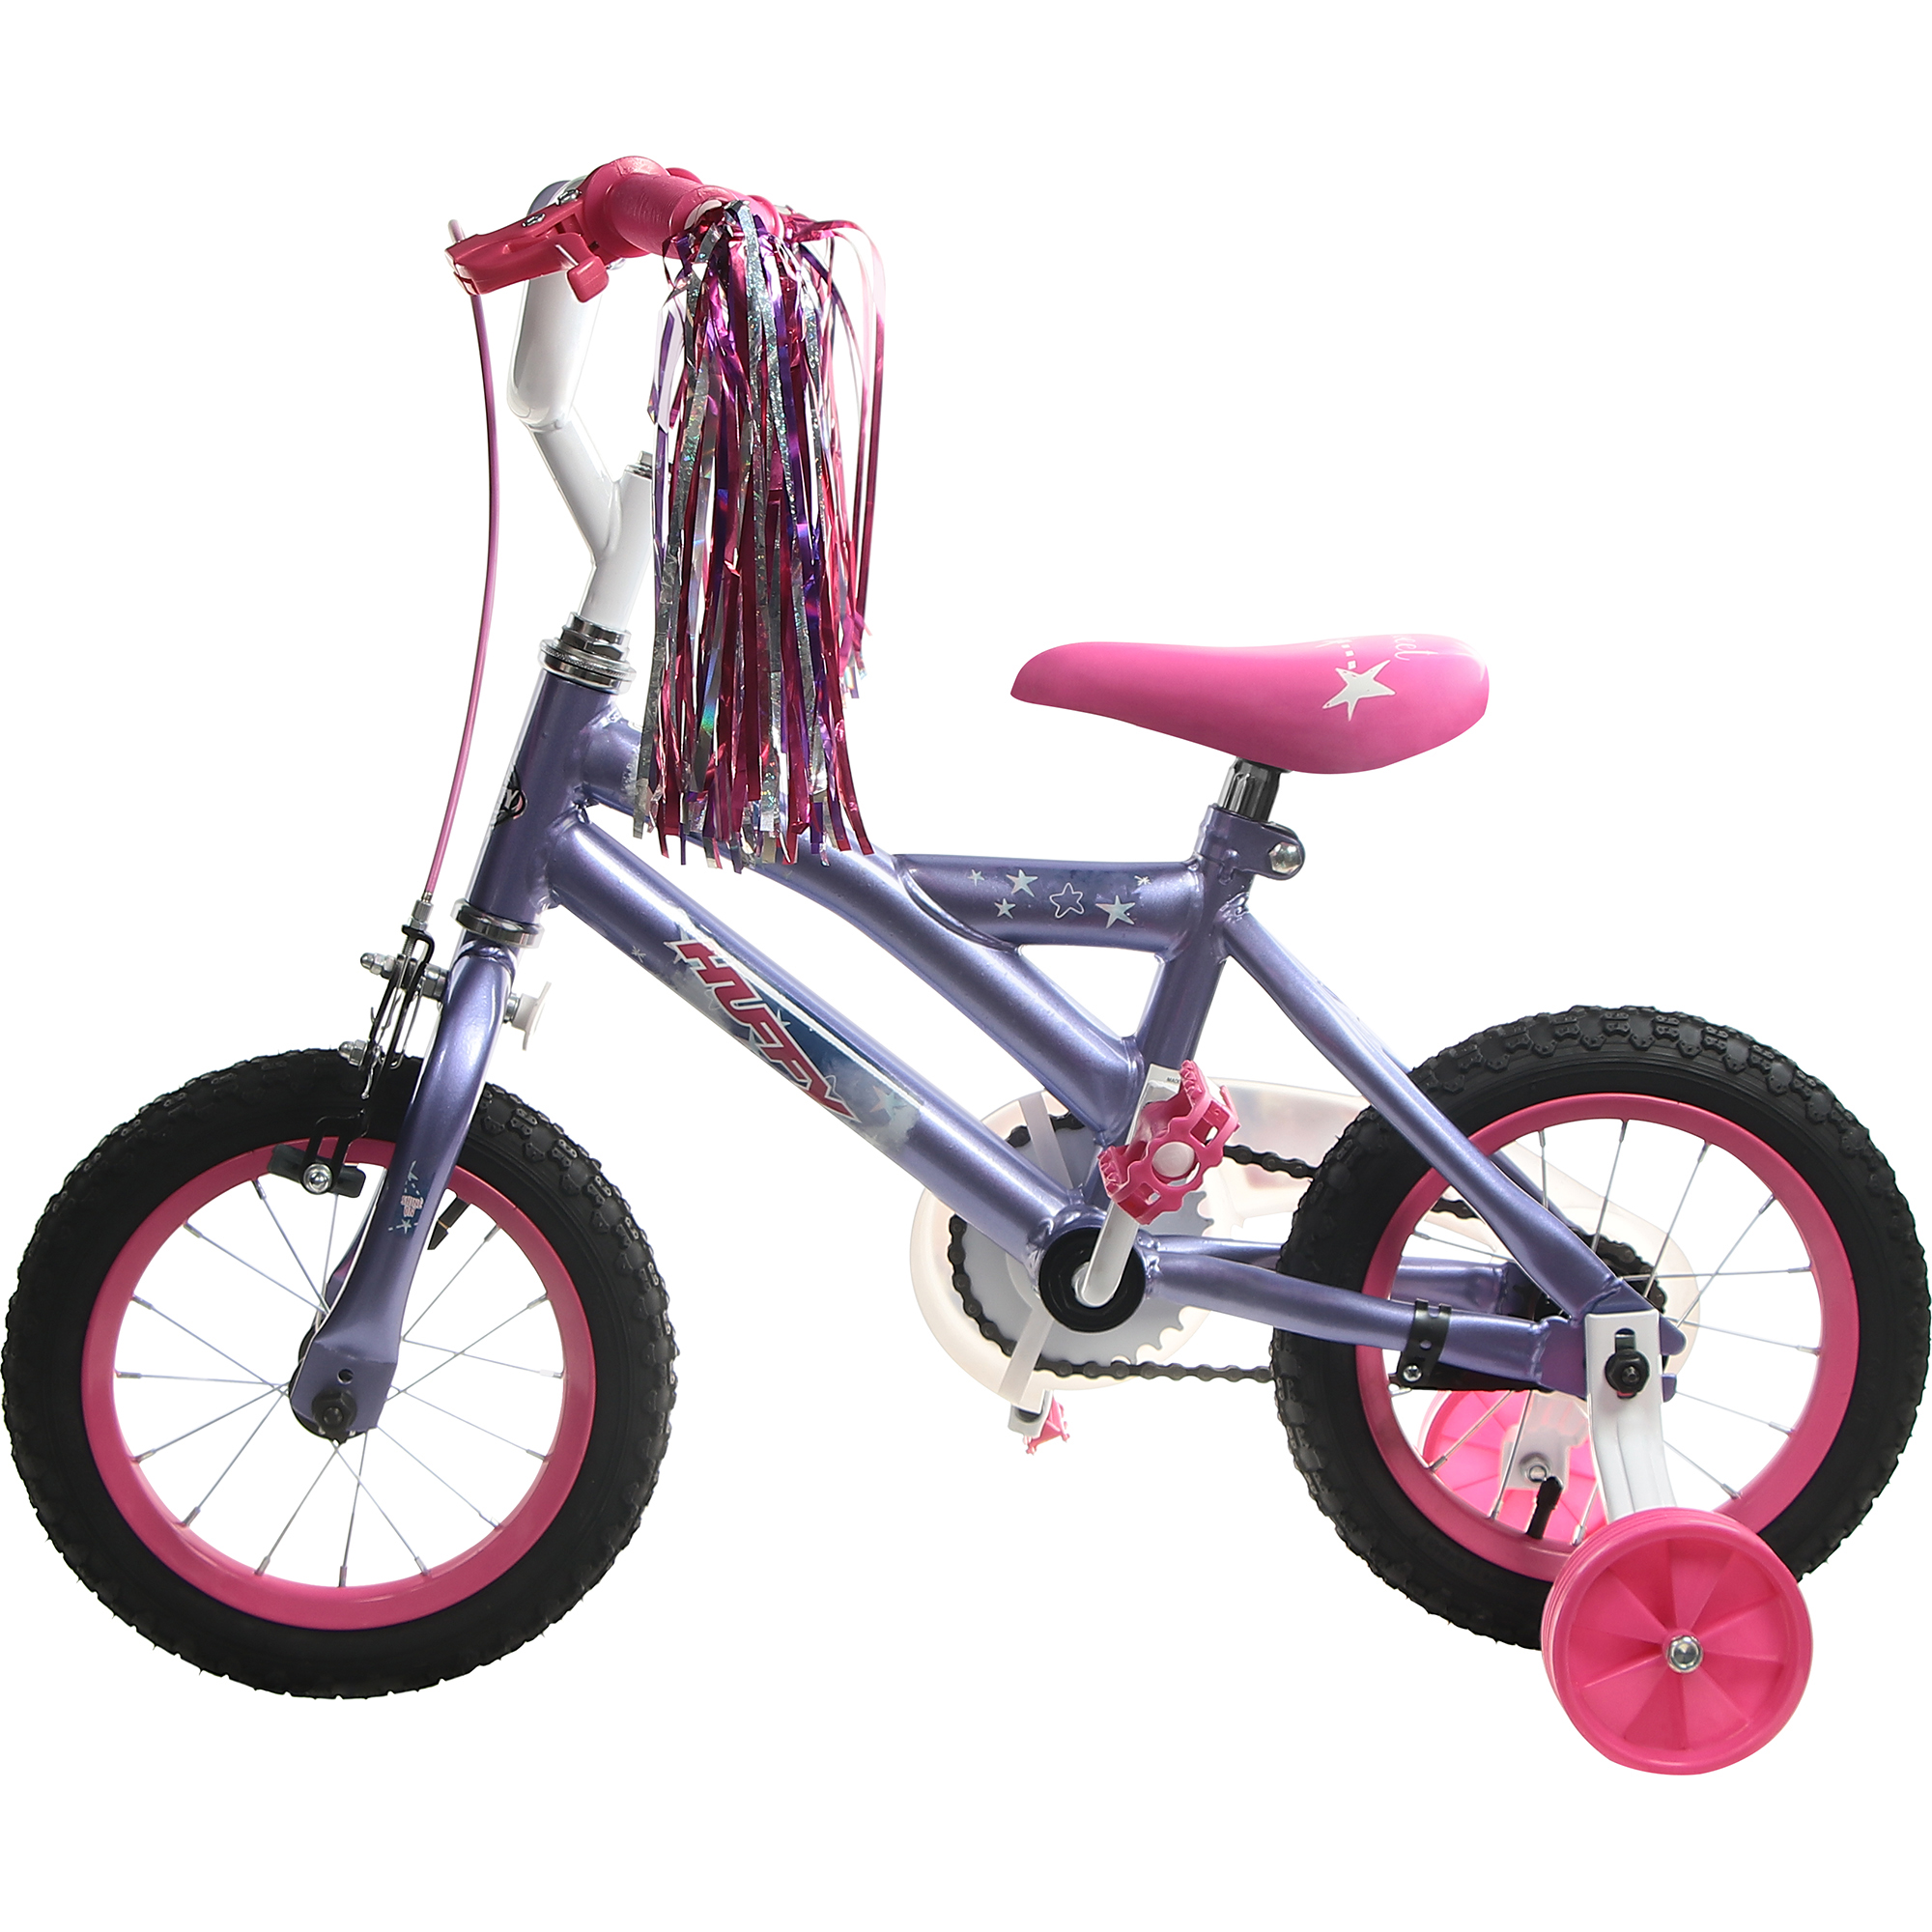 Велосипед детский Huffy So sweet, 12, для девочек детский двухколесный велосипед mobile kid